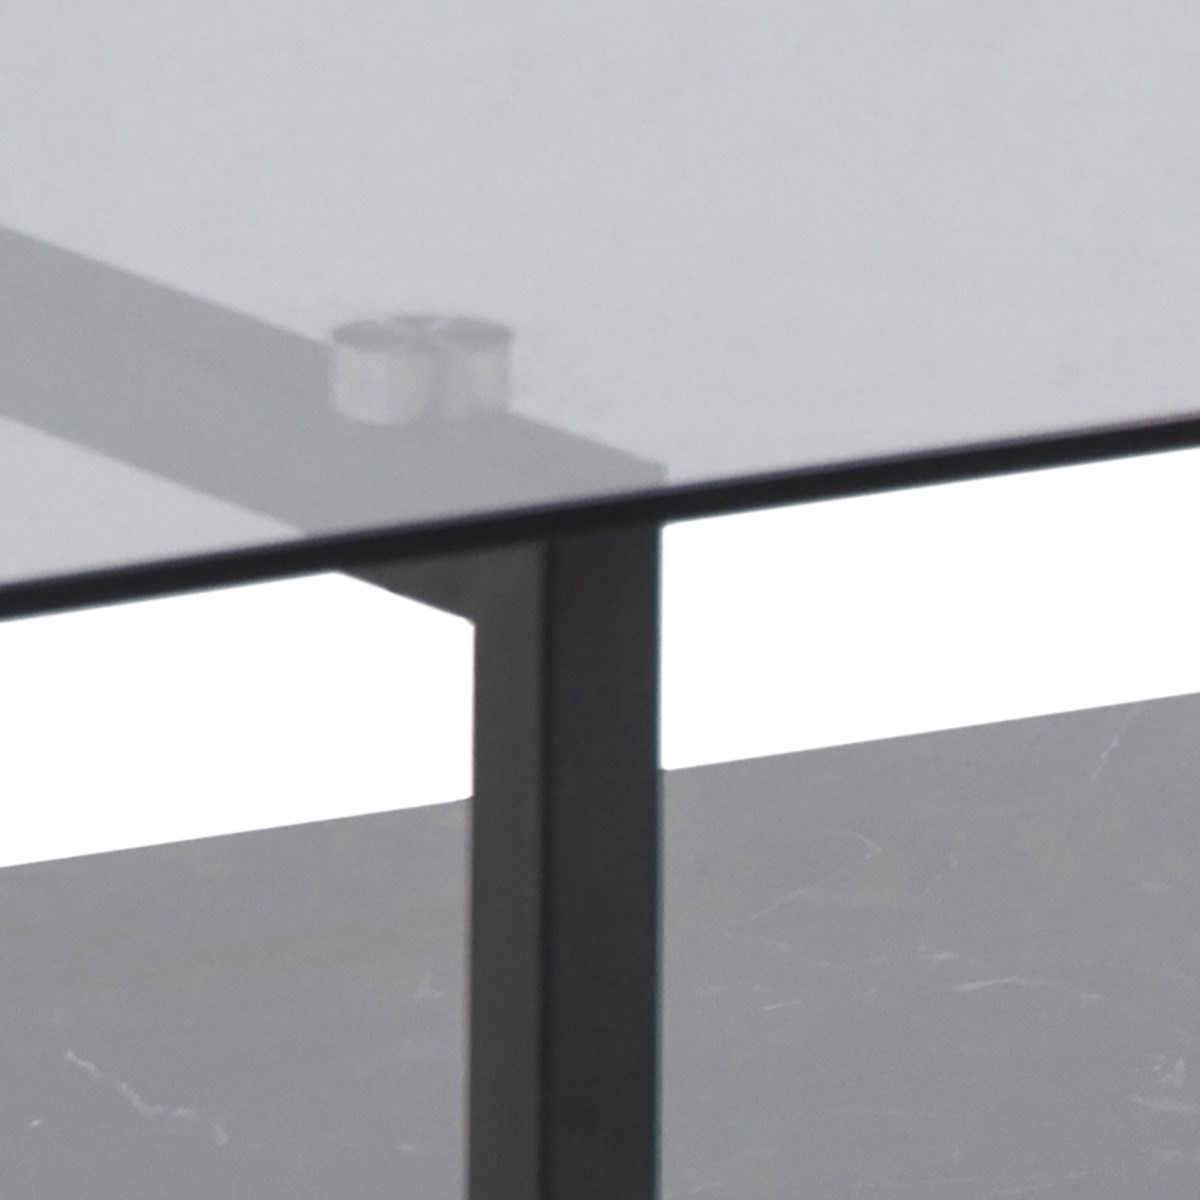 Table-de-salon-Okaya-87004-plateau-verre-etagere-melamine-decor-marbre-noir-pieds-metal-noir-110cm-0